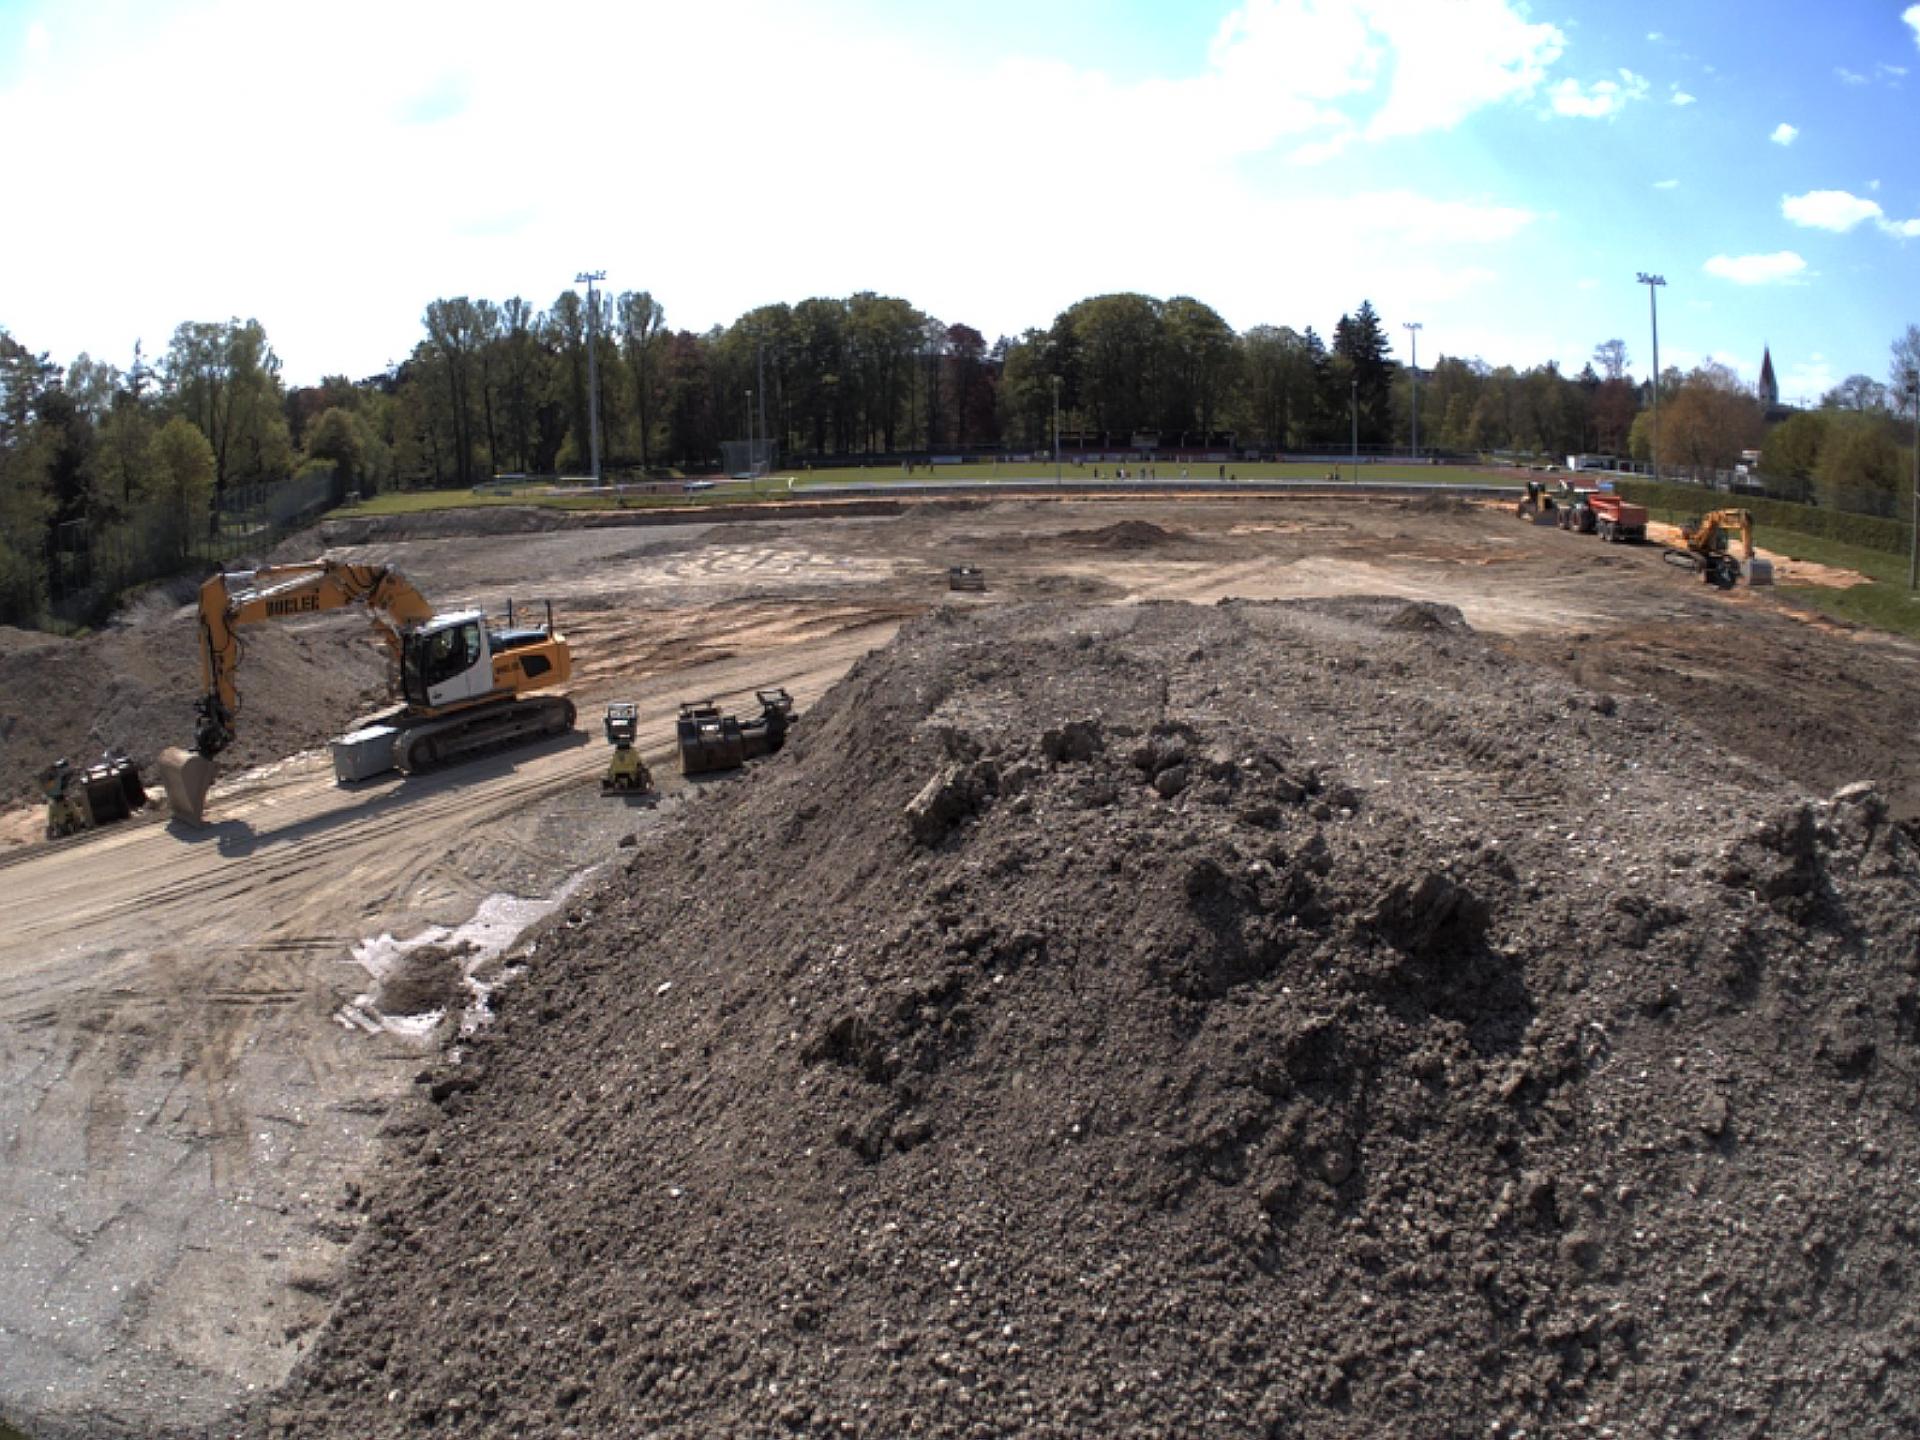 Nach der Vorbereitung des Untergrunds für das neue Eisstadion beginnen nun die Rohbauarbeiten.
Foto: KU Eisstadion Kaufbeuren, Webcam vom 07.05.2016